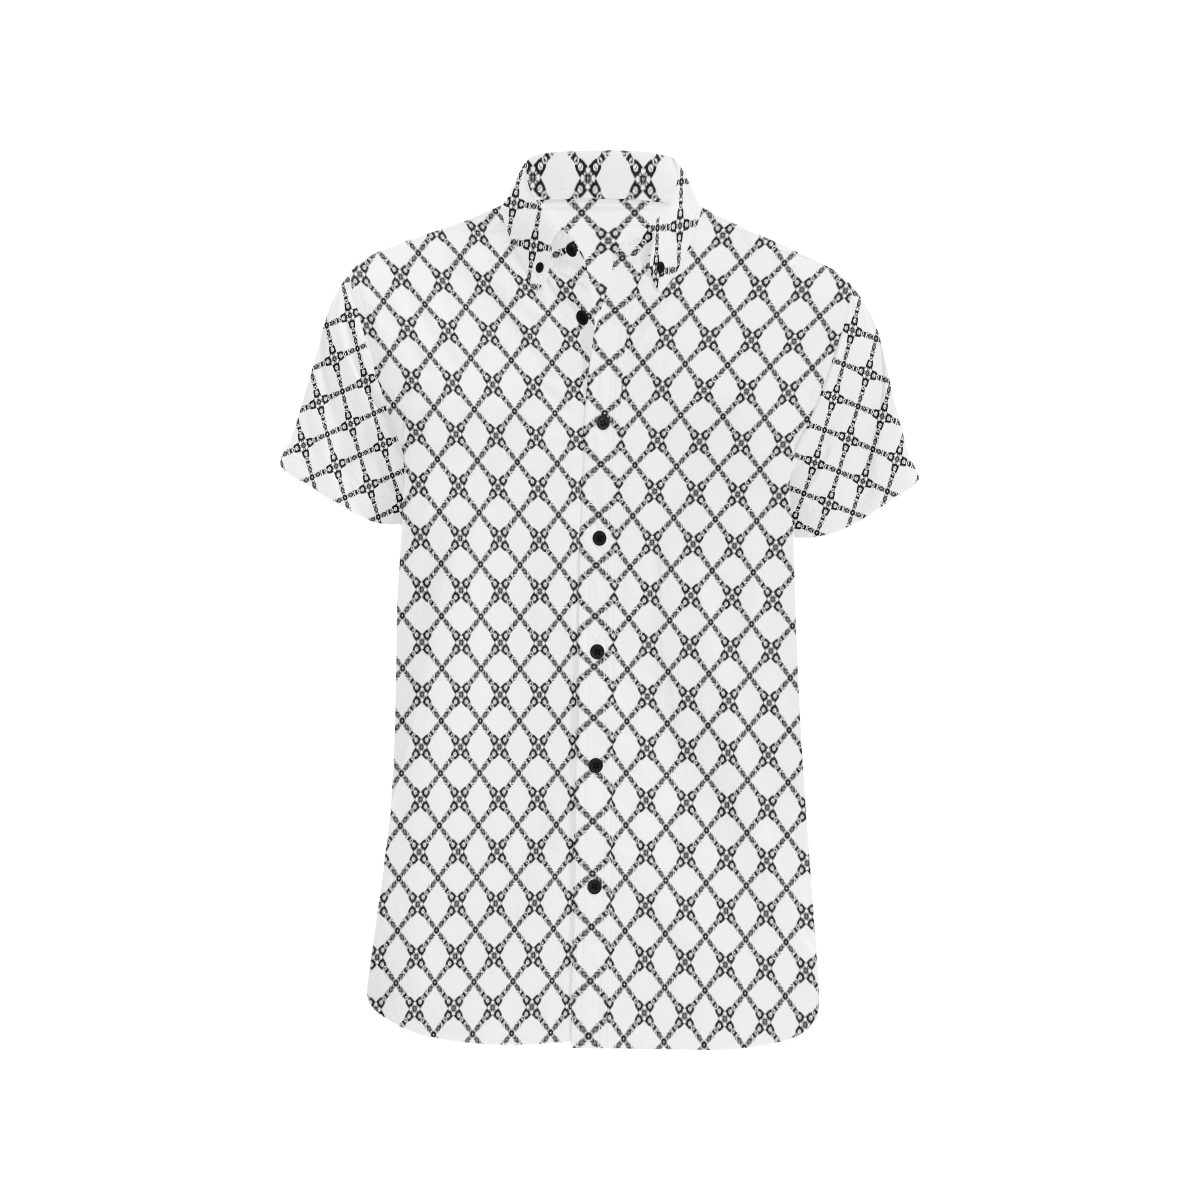 Model #114c| Men's All Over Print Short Sleeve Shirt (Model T53)